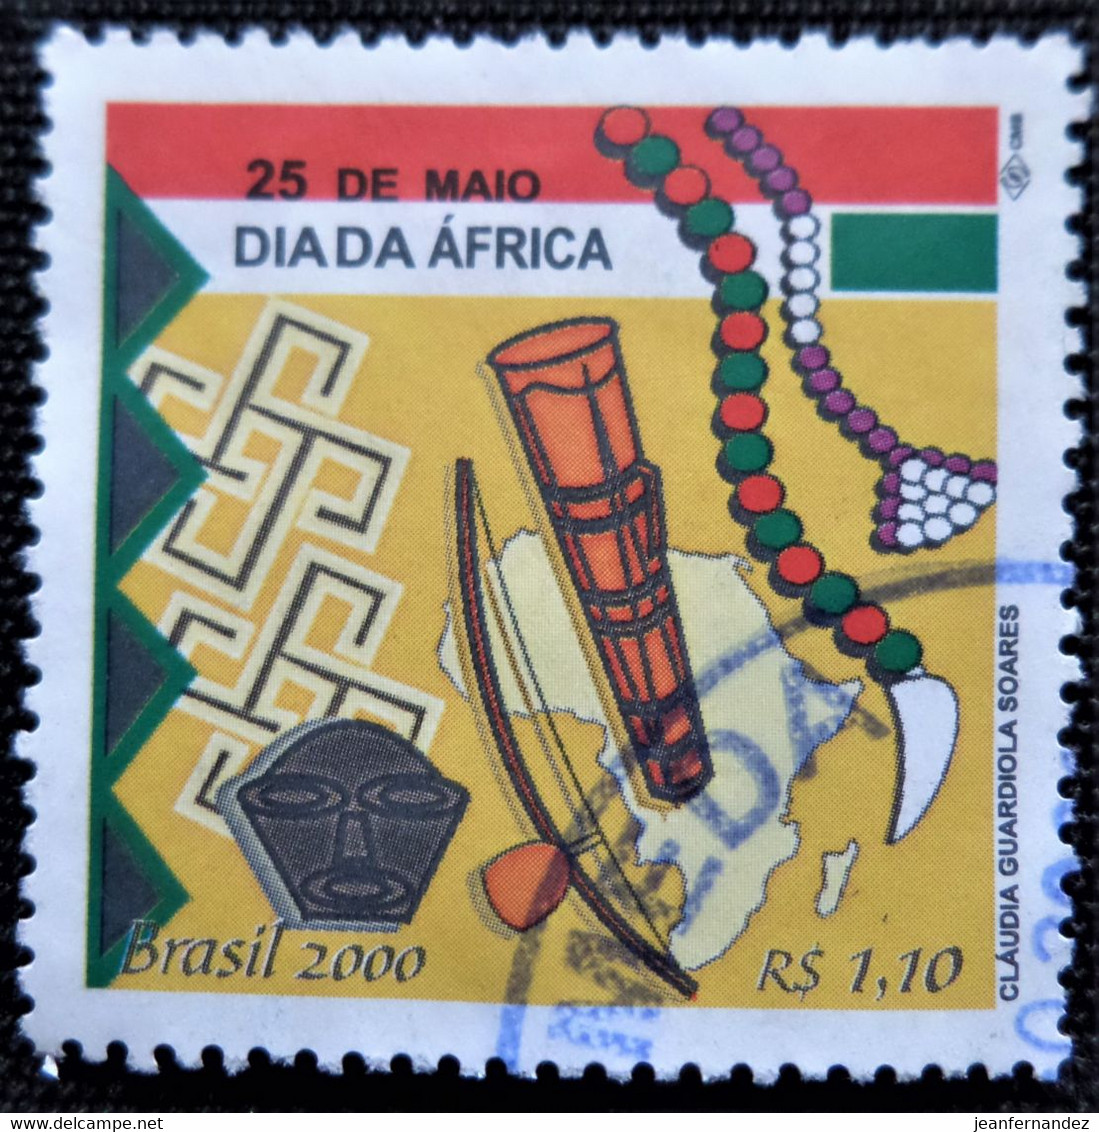 Timbre Du Brésil 2000 Africa Day   Stampworld N° 3057 - Gebraucht